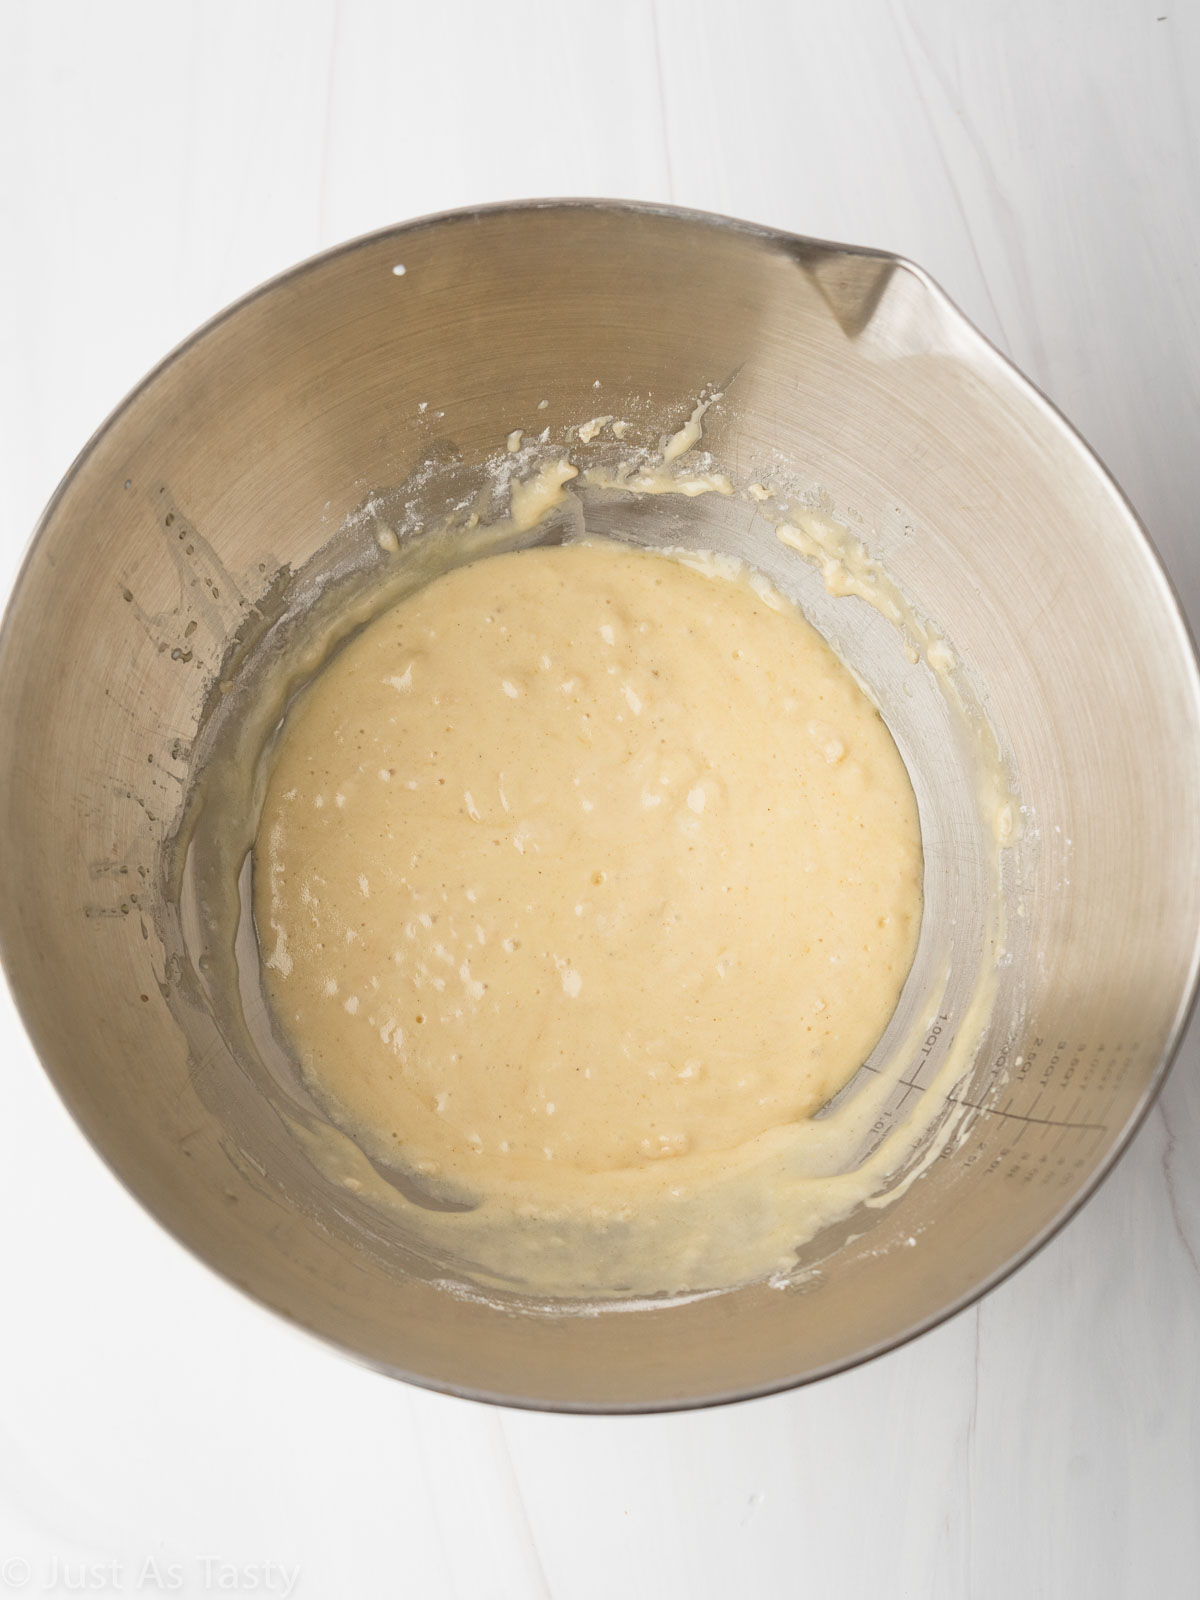 Olive oil cake batter in a bowl.